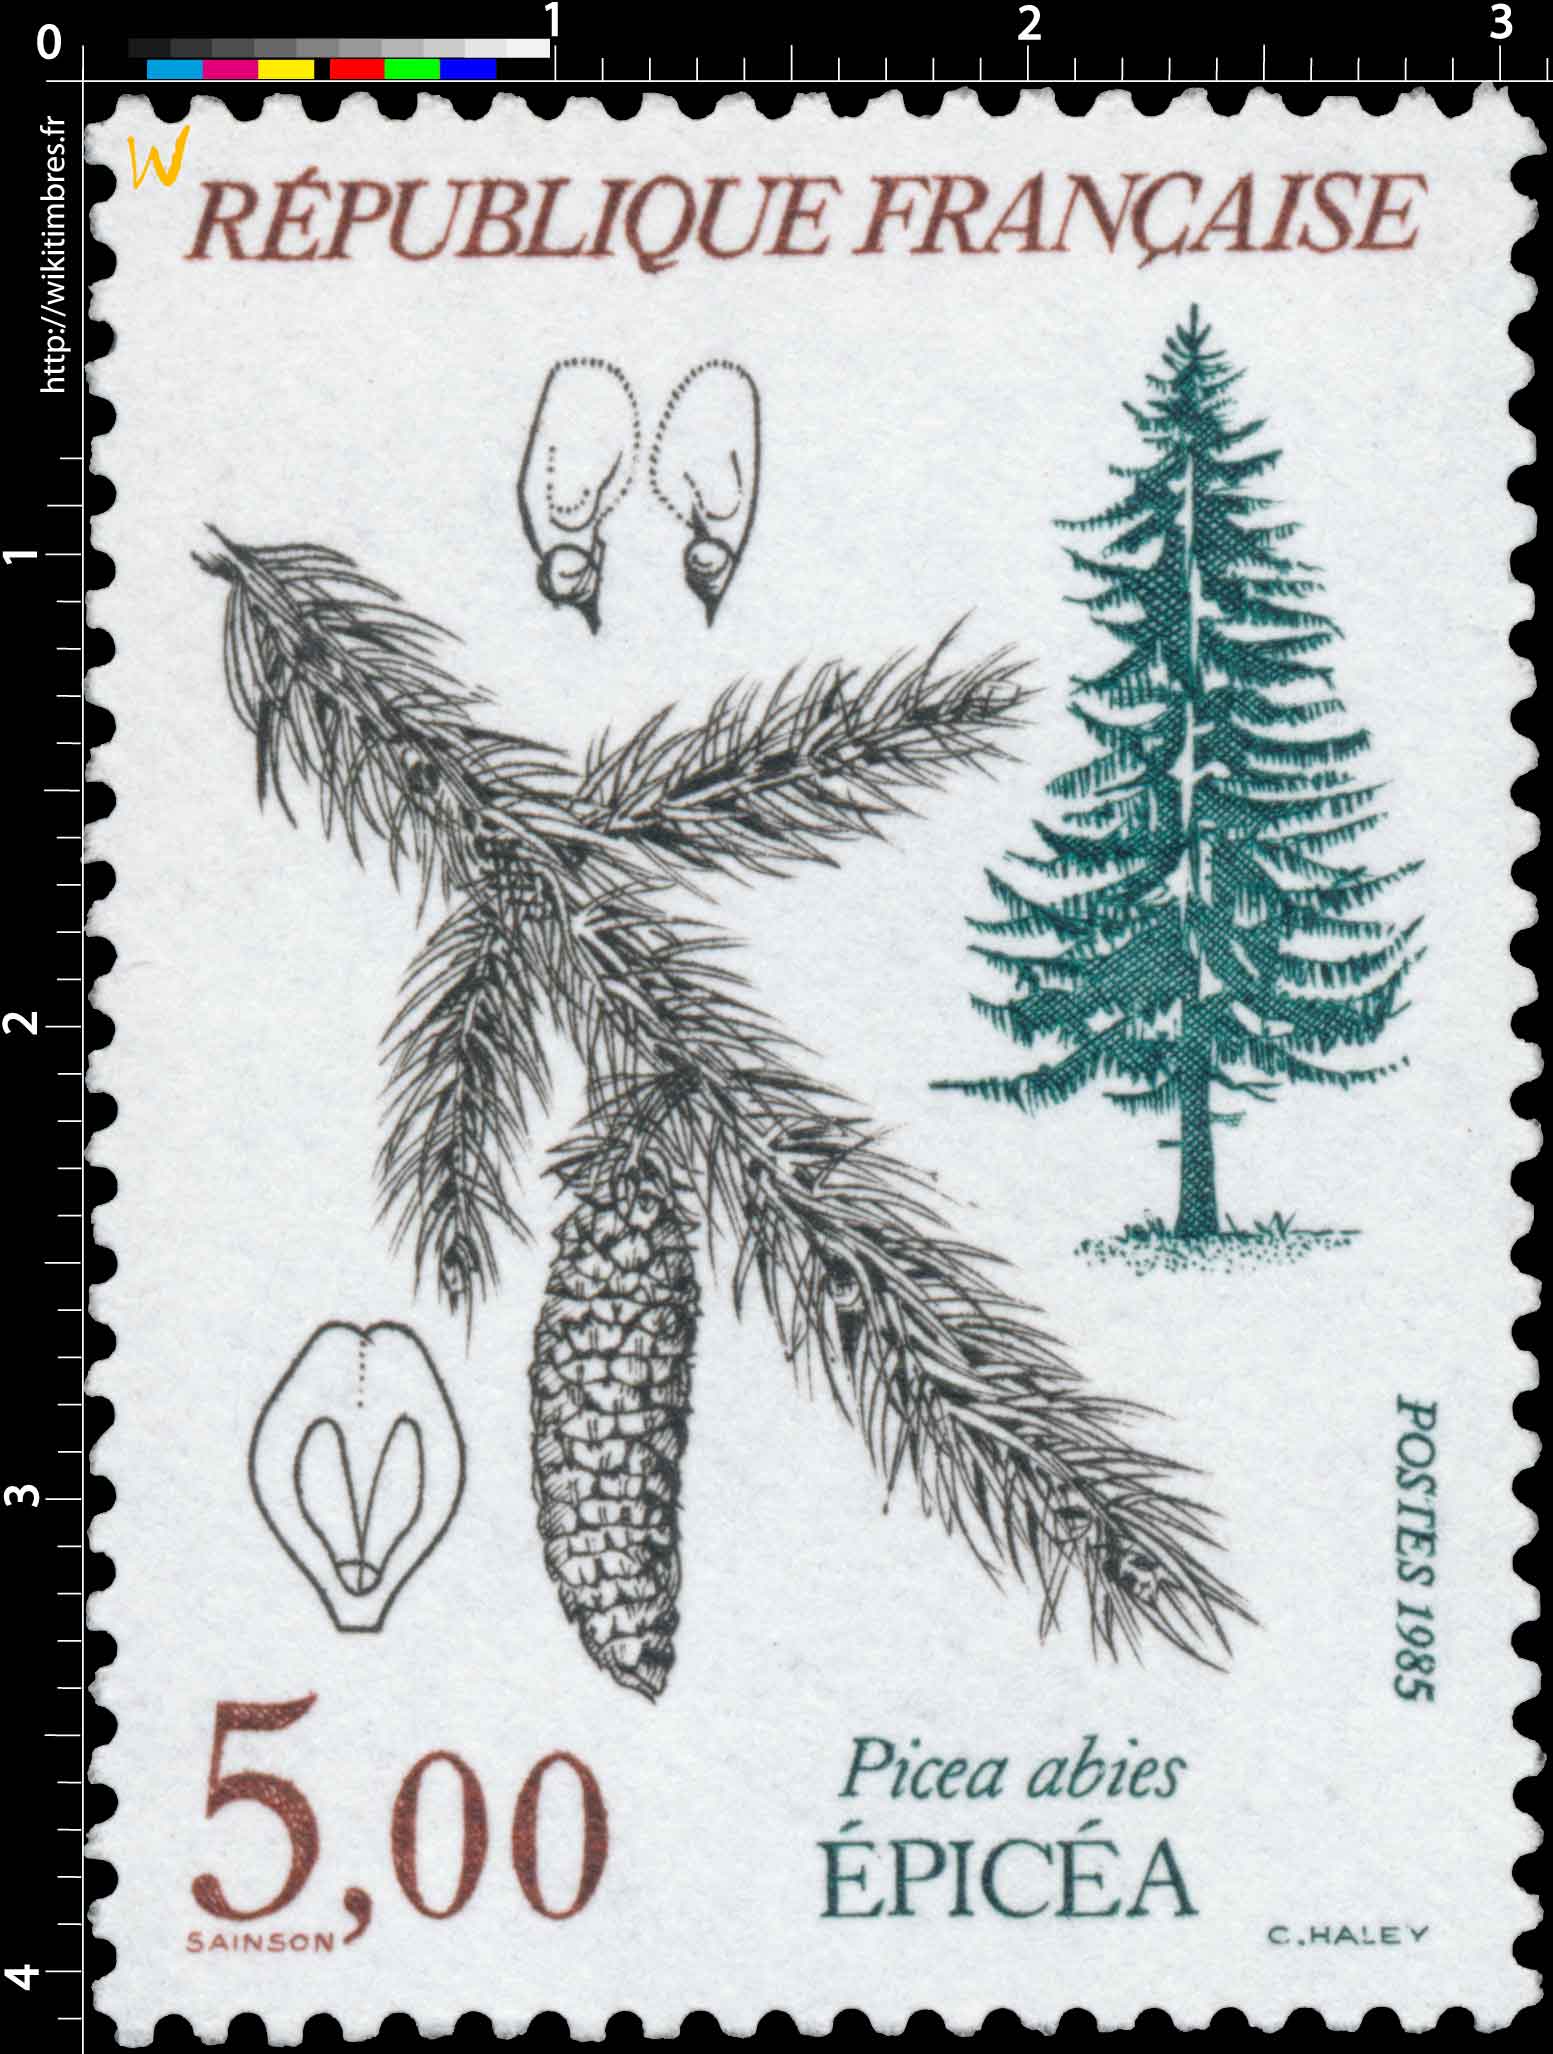 1985 ÉPICÉA Picea abies